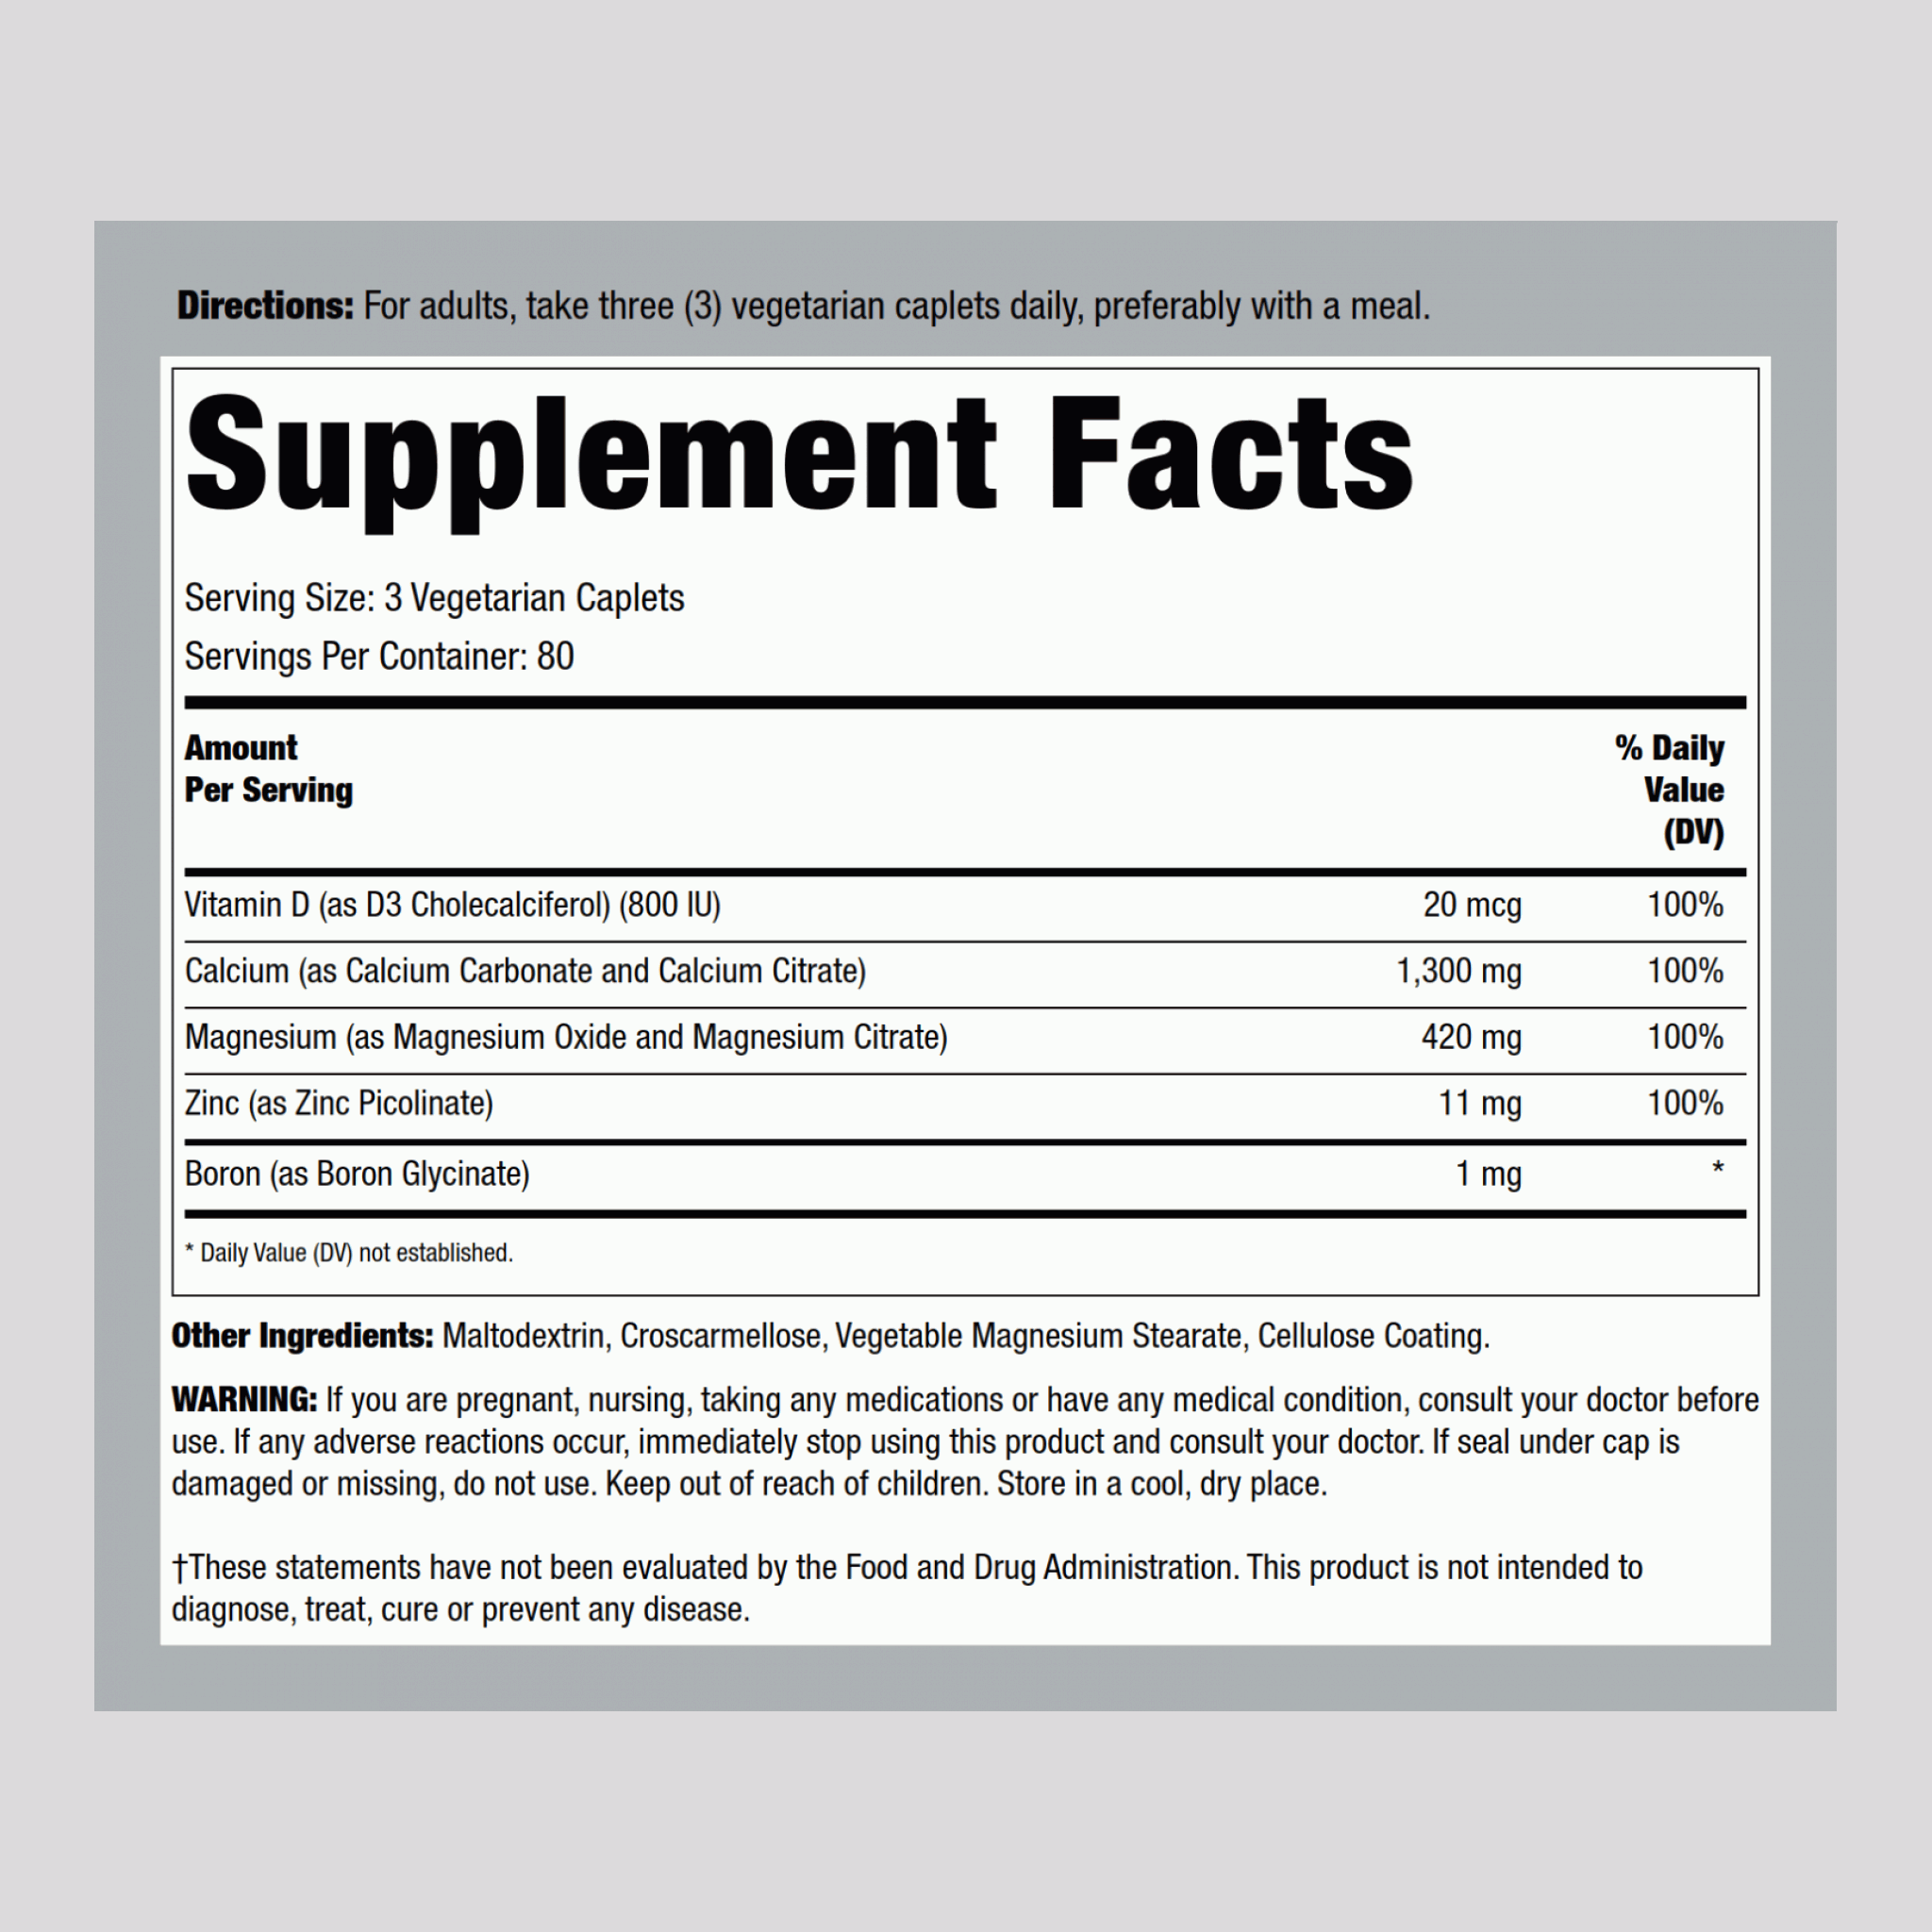 Calcium Magnesium Zinc with Vitamin D3, 240 Vegetarian Caplets